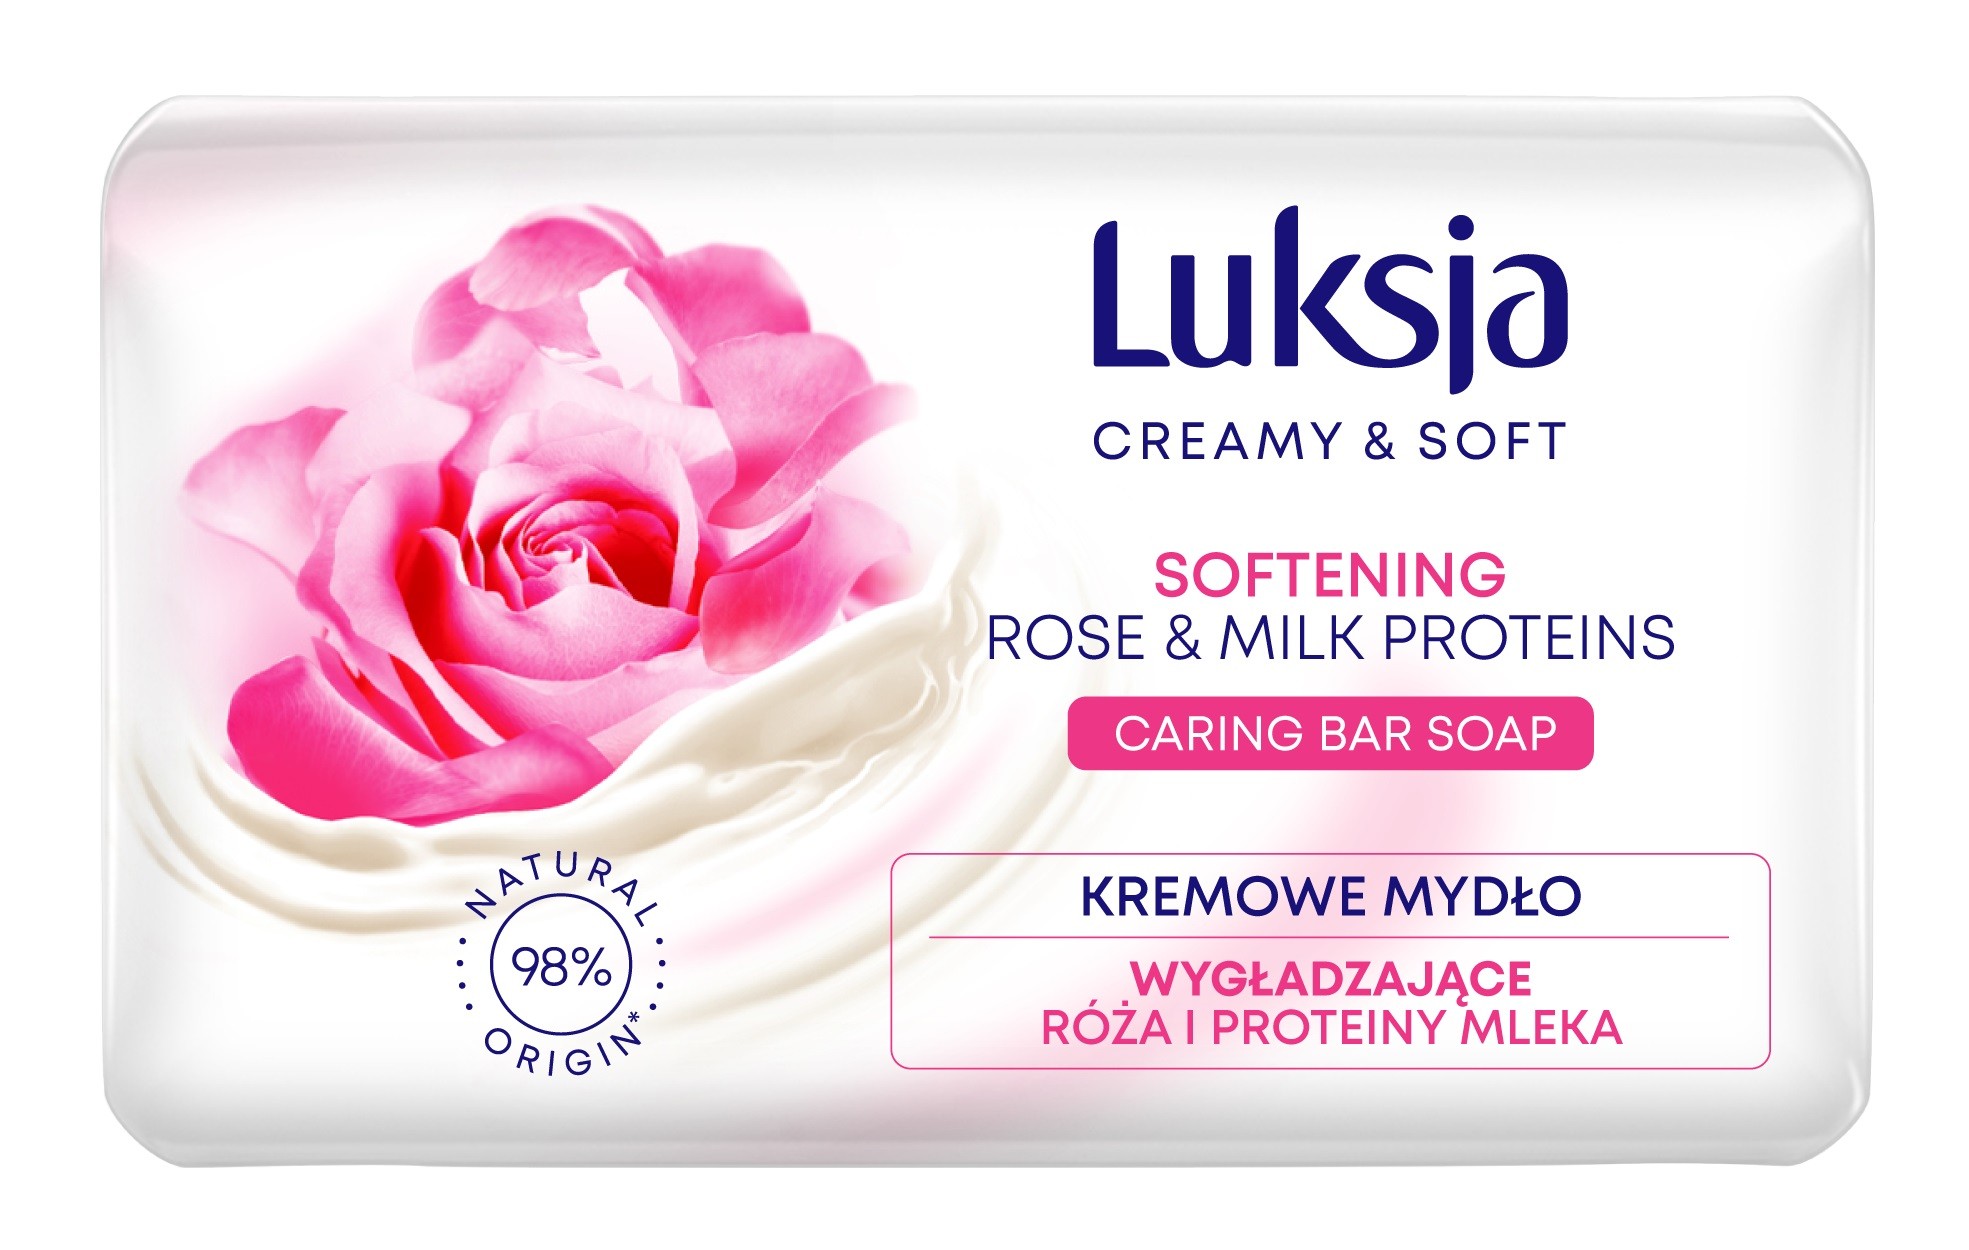 Luksja Creamy & Soft Wygładzające Kremowe Mydło w kostce Róża & Proteiny Mleka 90g